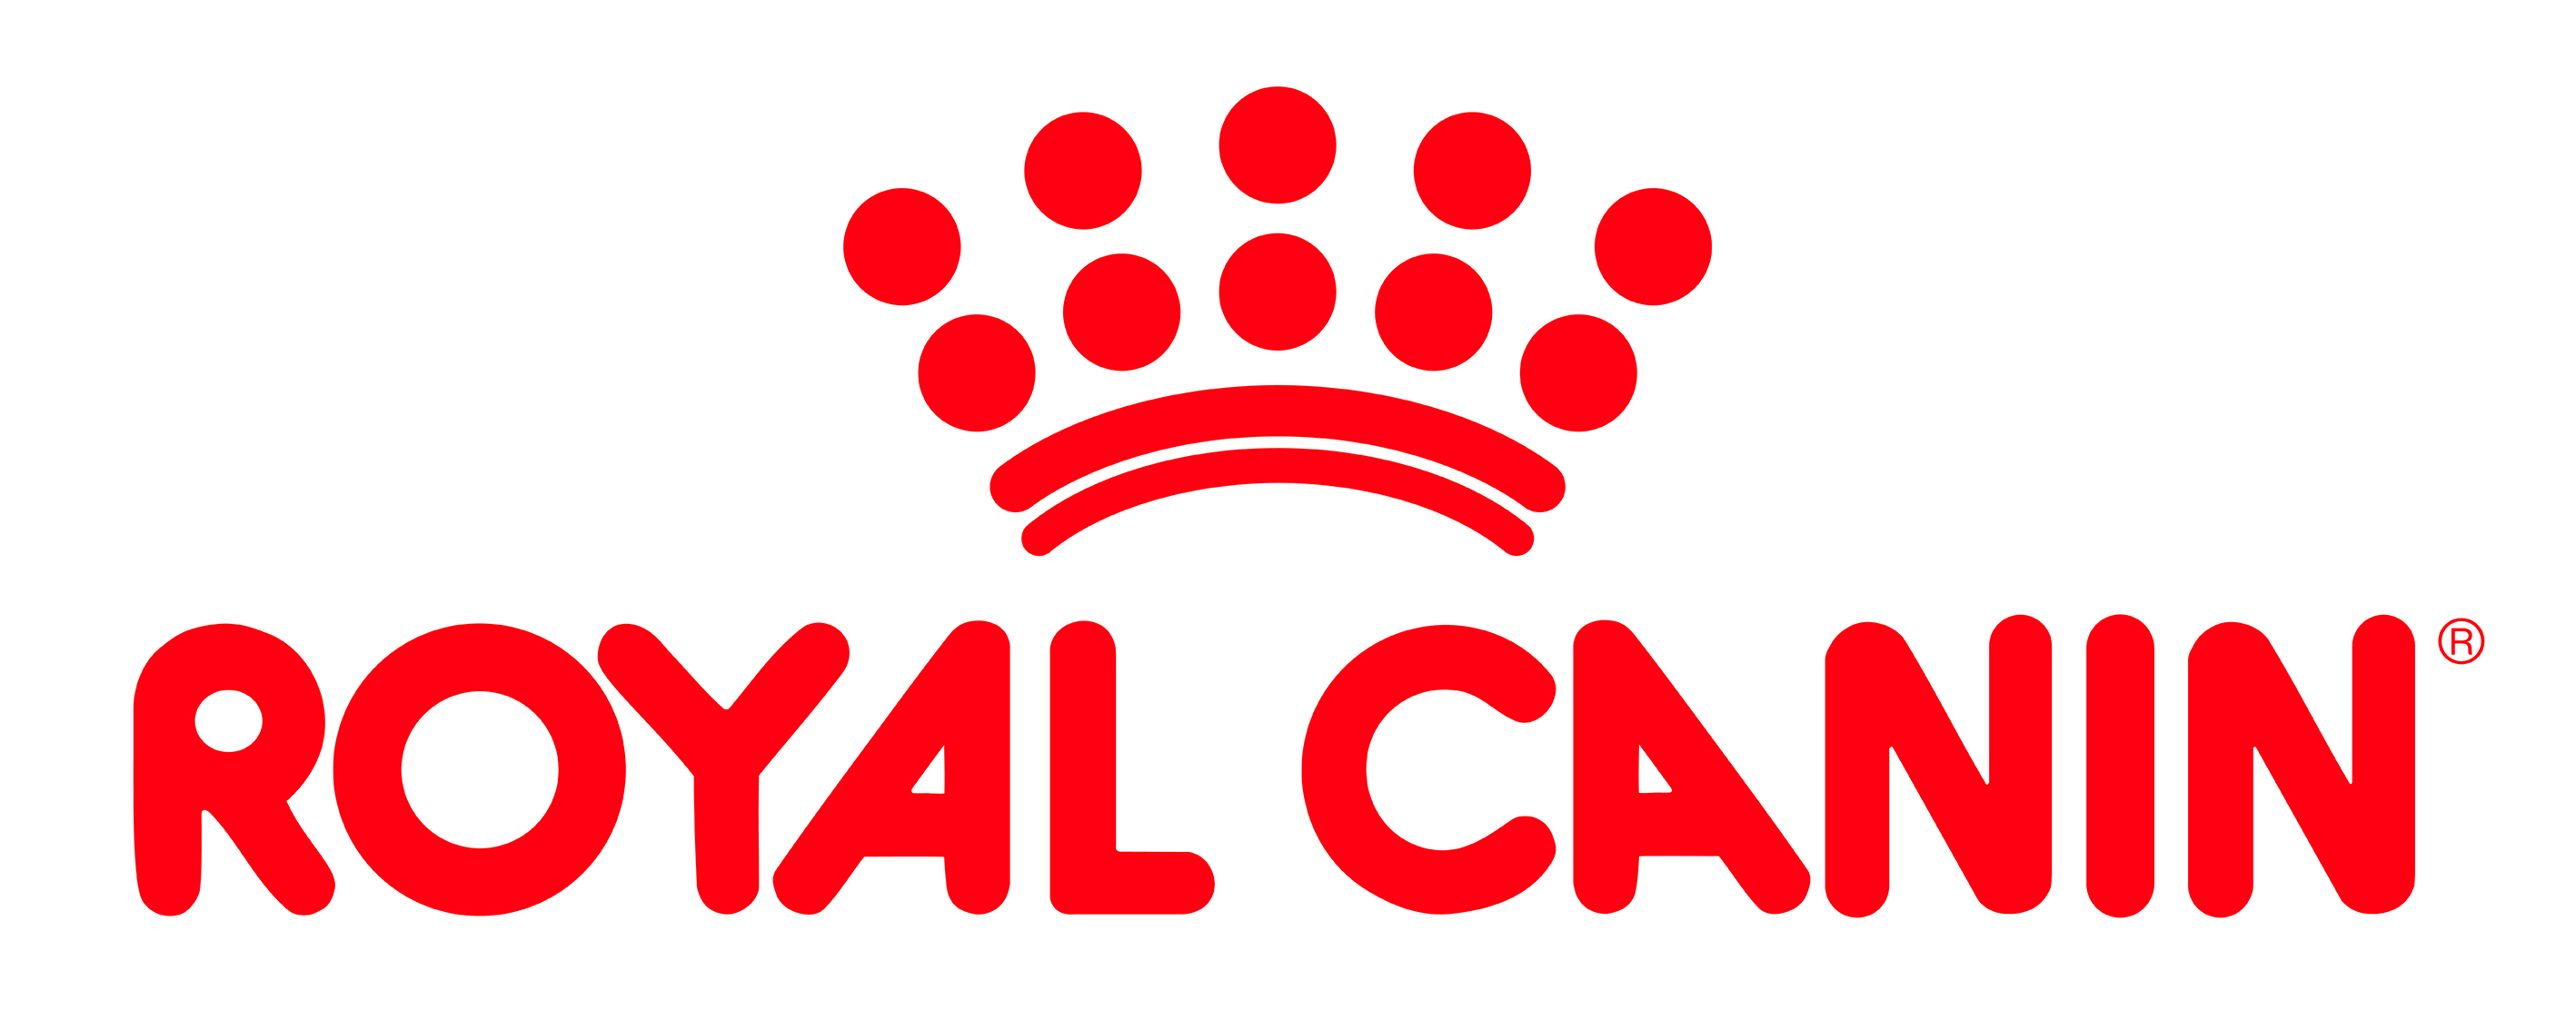 Royan Canin logo